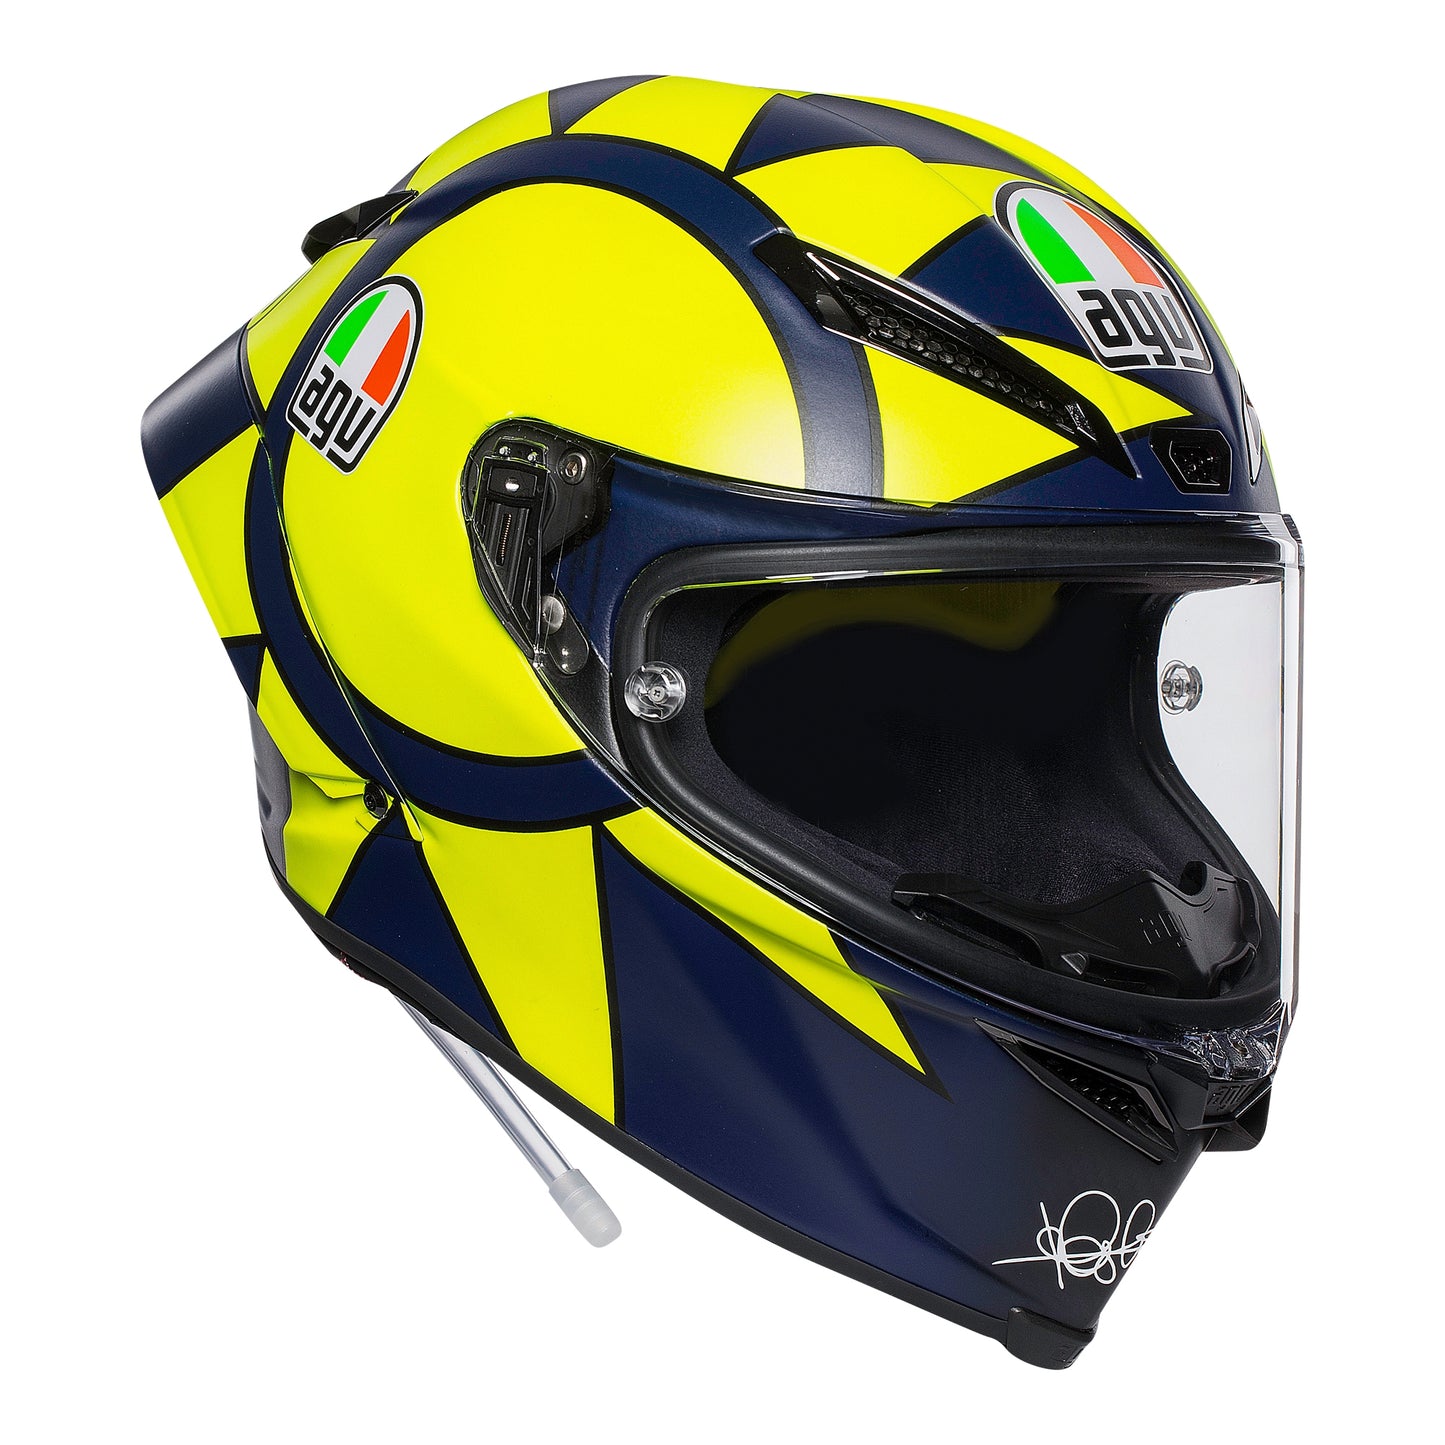 AGV Pista GP-RR - Soleluna 2019  Motorcycle Helmet